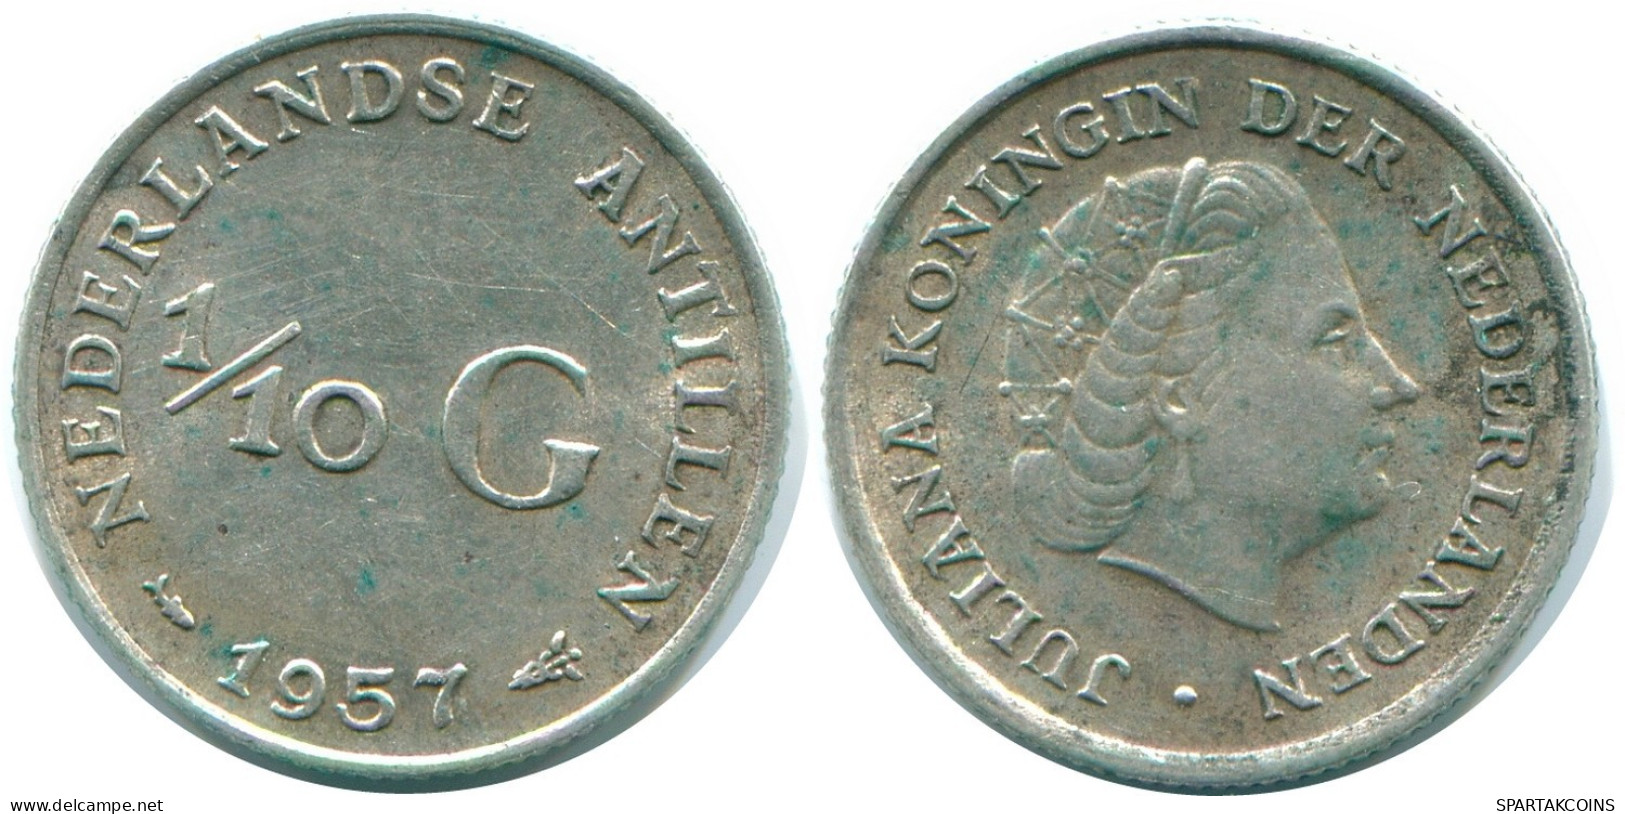 1/10 GULDEN 1957 NIEDERLÄNDISCHE ANTILLEN SILBER Koloniale Münze #NL12172.3.D.A - Niederländische Antillen